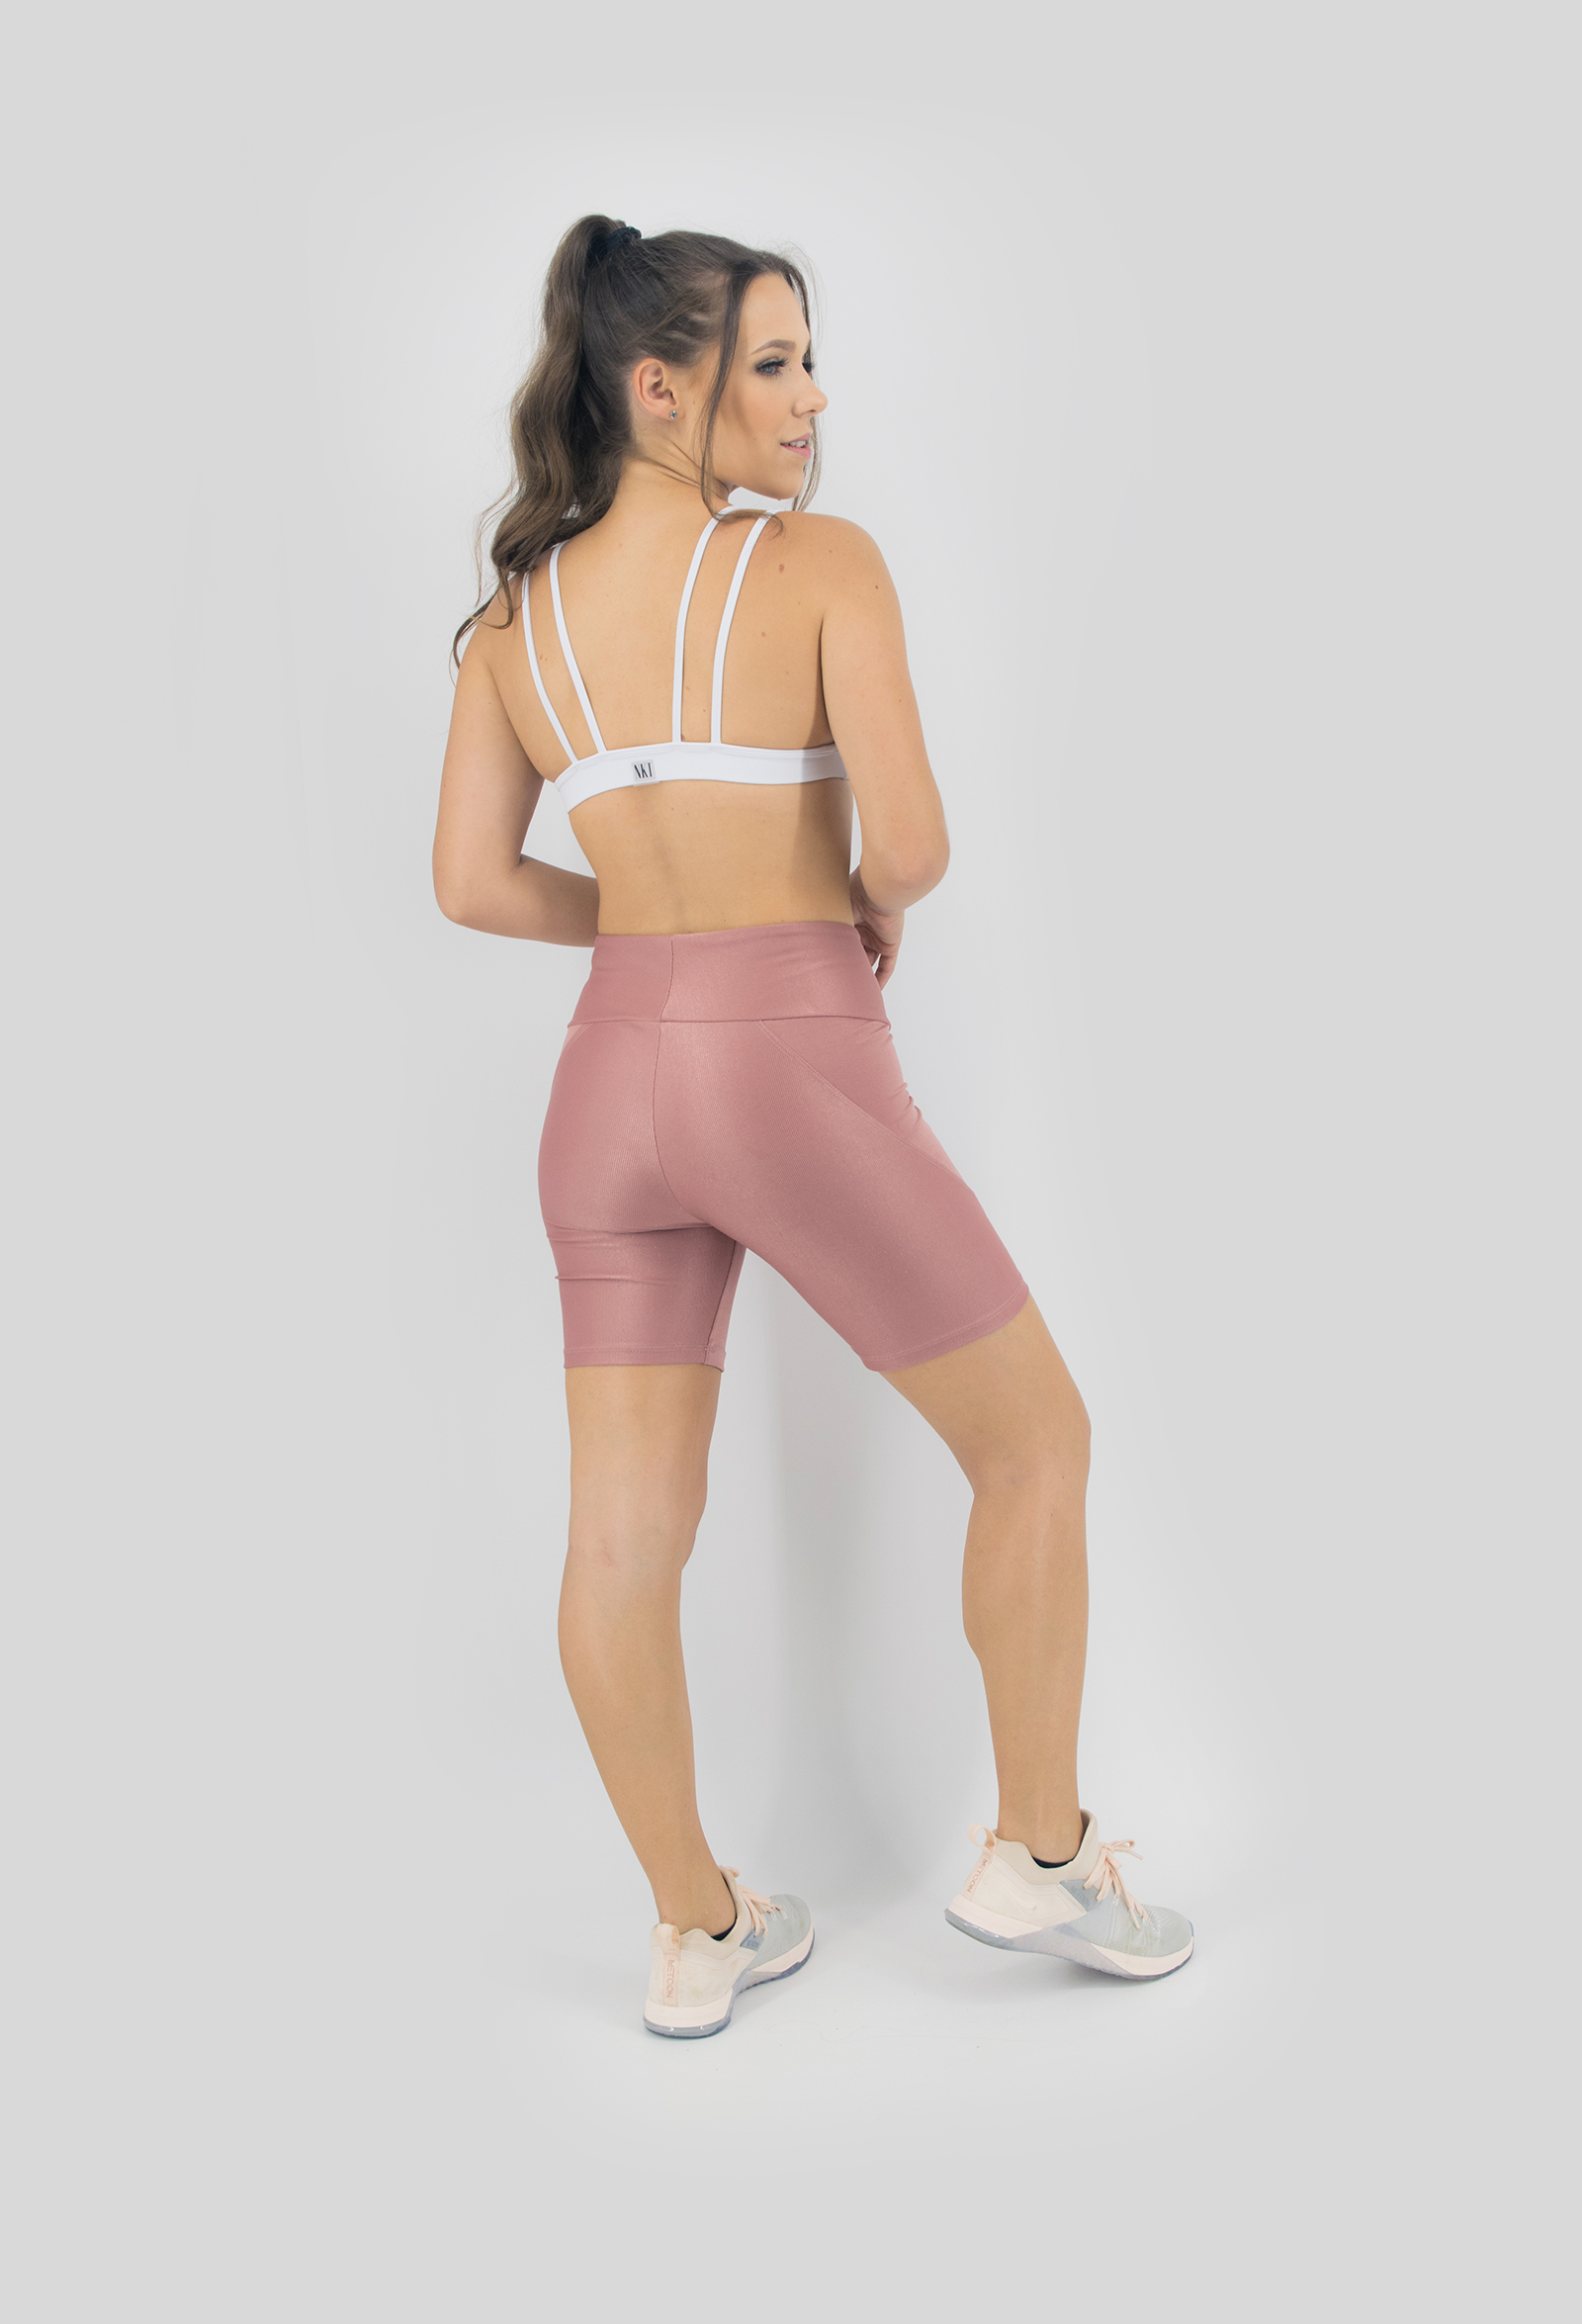 Top Tiras Branco, Coleção Move Your Body - NKT Fitwear Moda Fitness